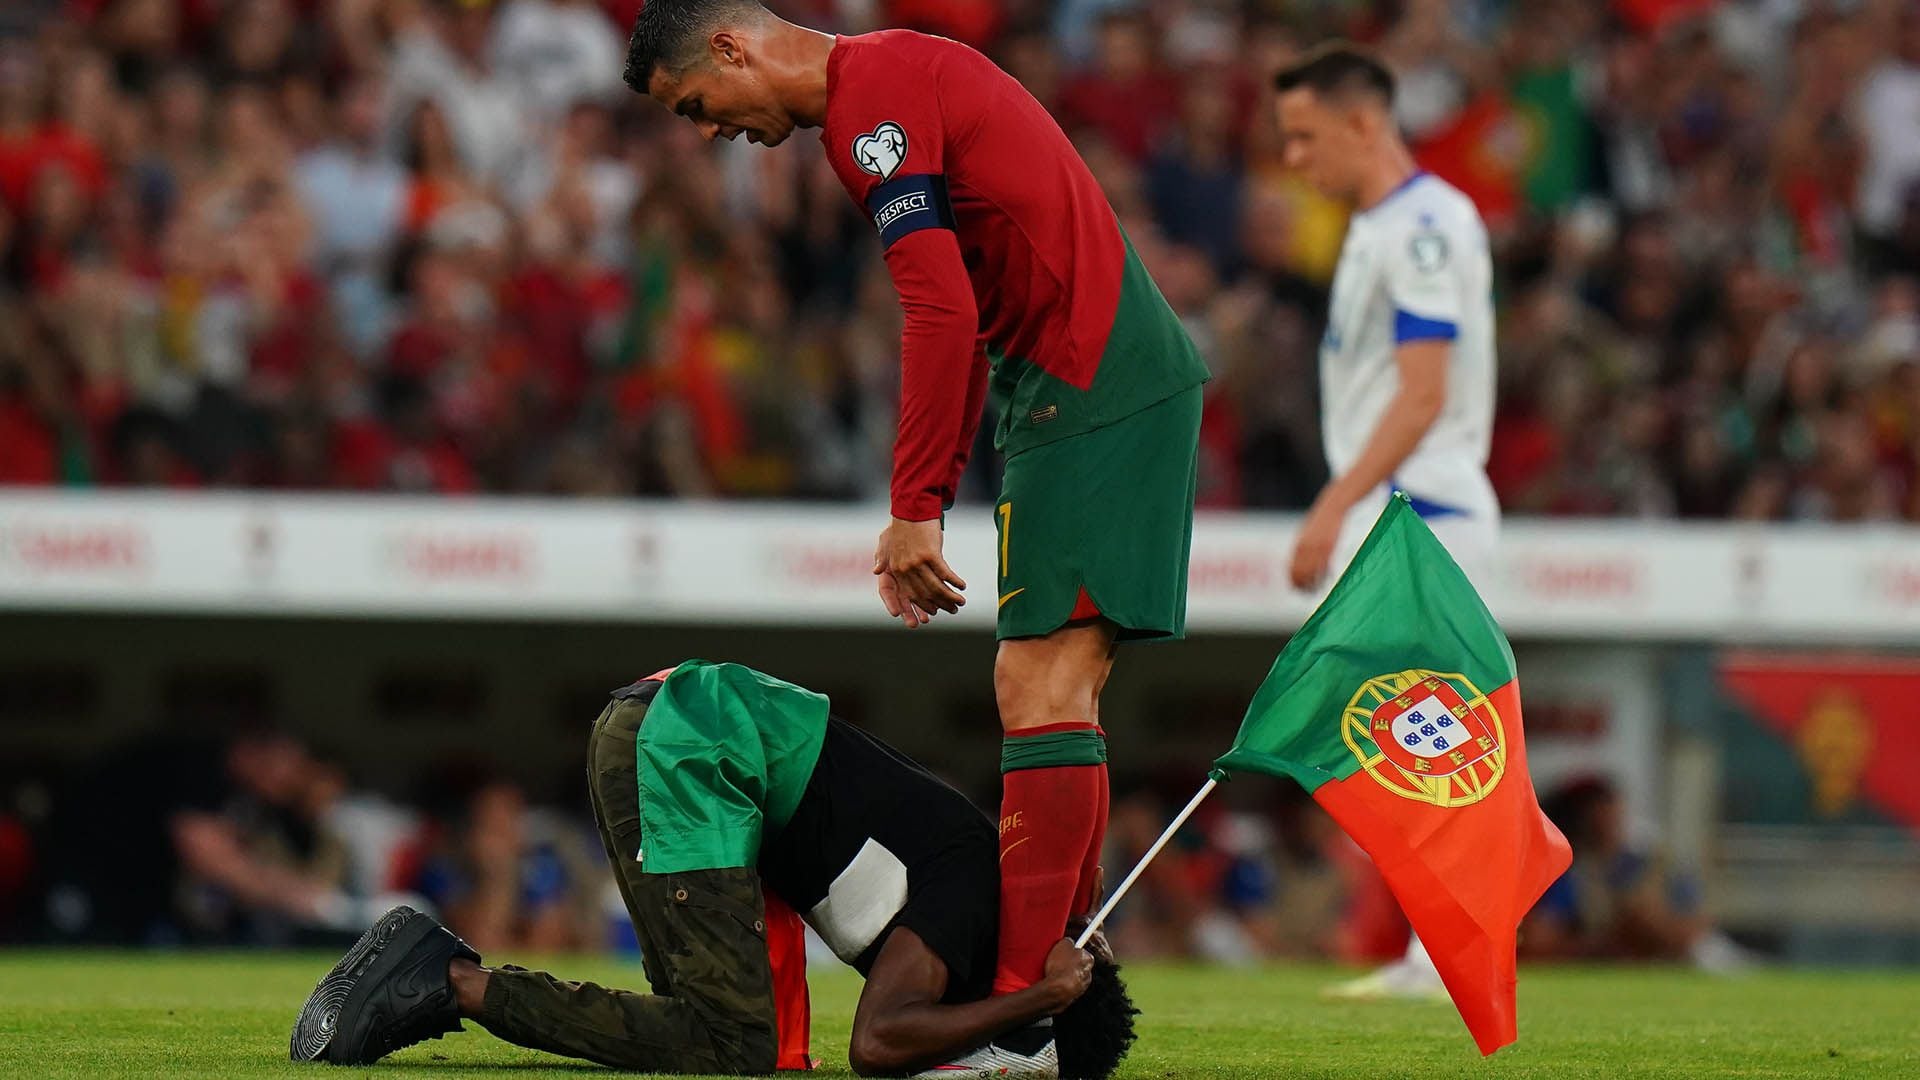 O torcedor de Cristiano Ronaldo se curvou diante de seu ídolo (Foto Gualter Fatia/Getty Images)